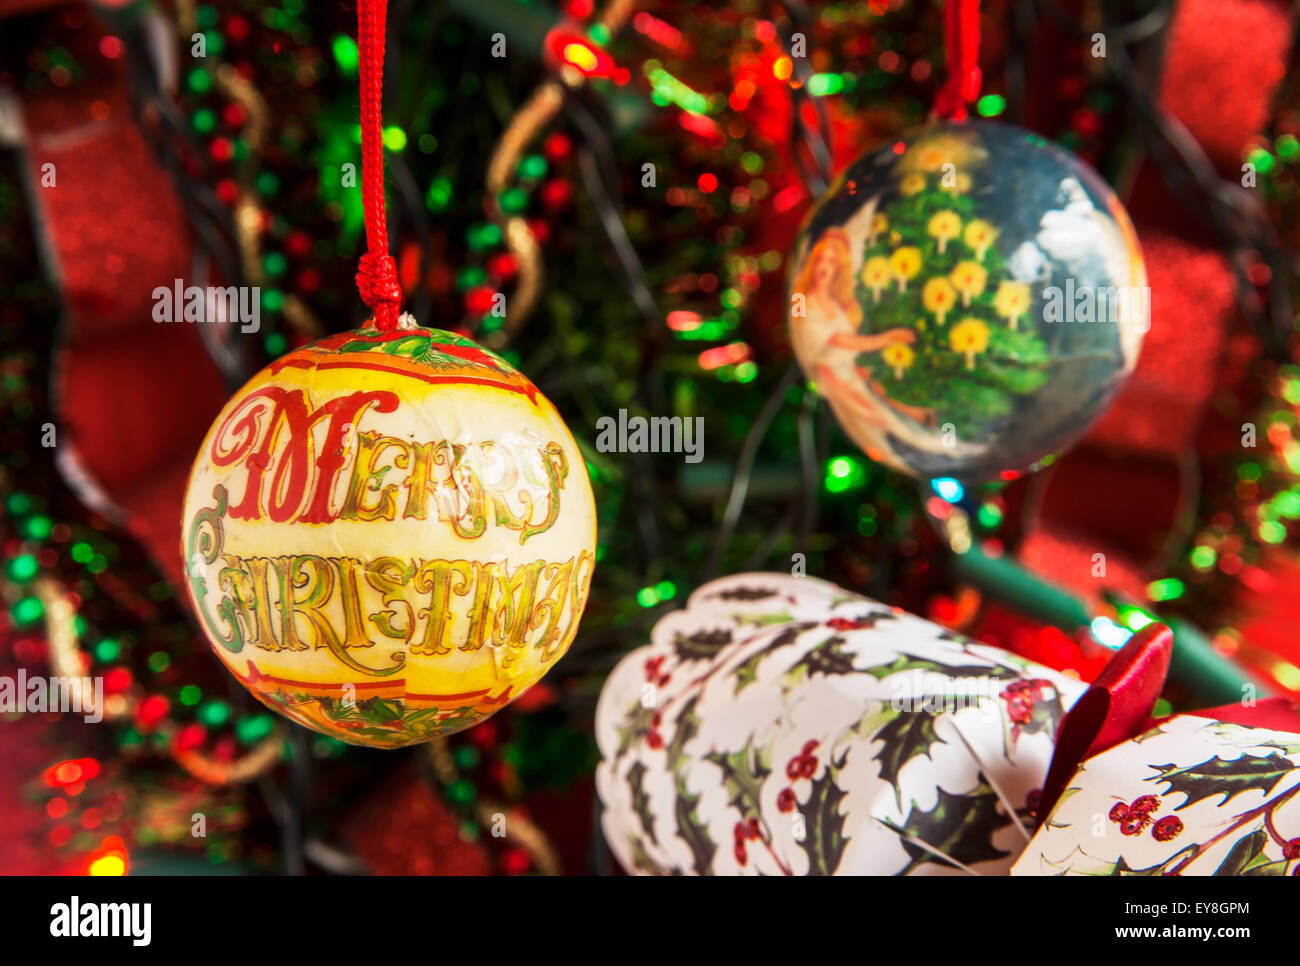 Buon Natale decorazioni in colori rossi e verdi limitata profondità di campo in modo tale che il messaggio Merry Christmas spicca e una spaccatura Foto Stock